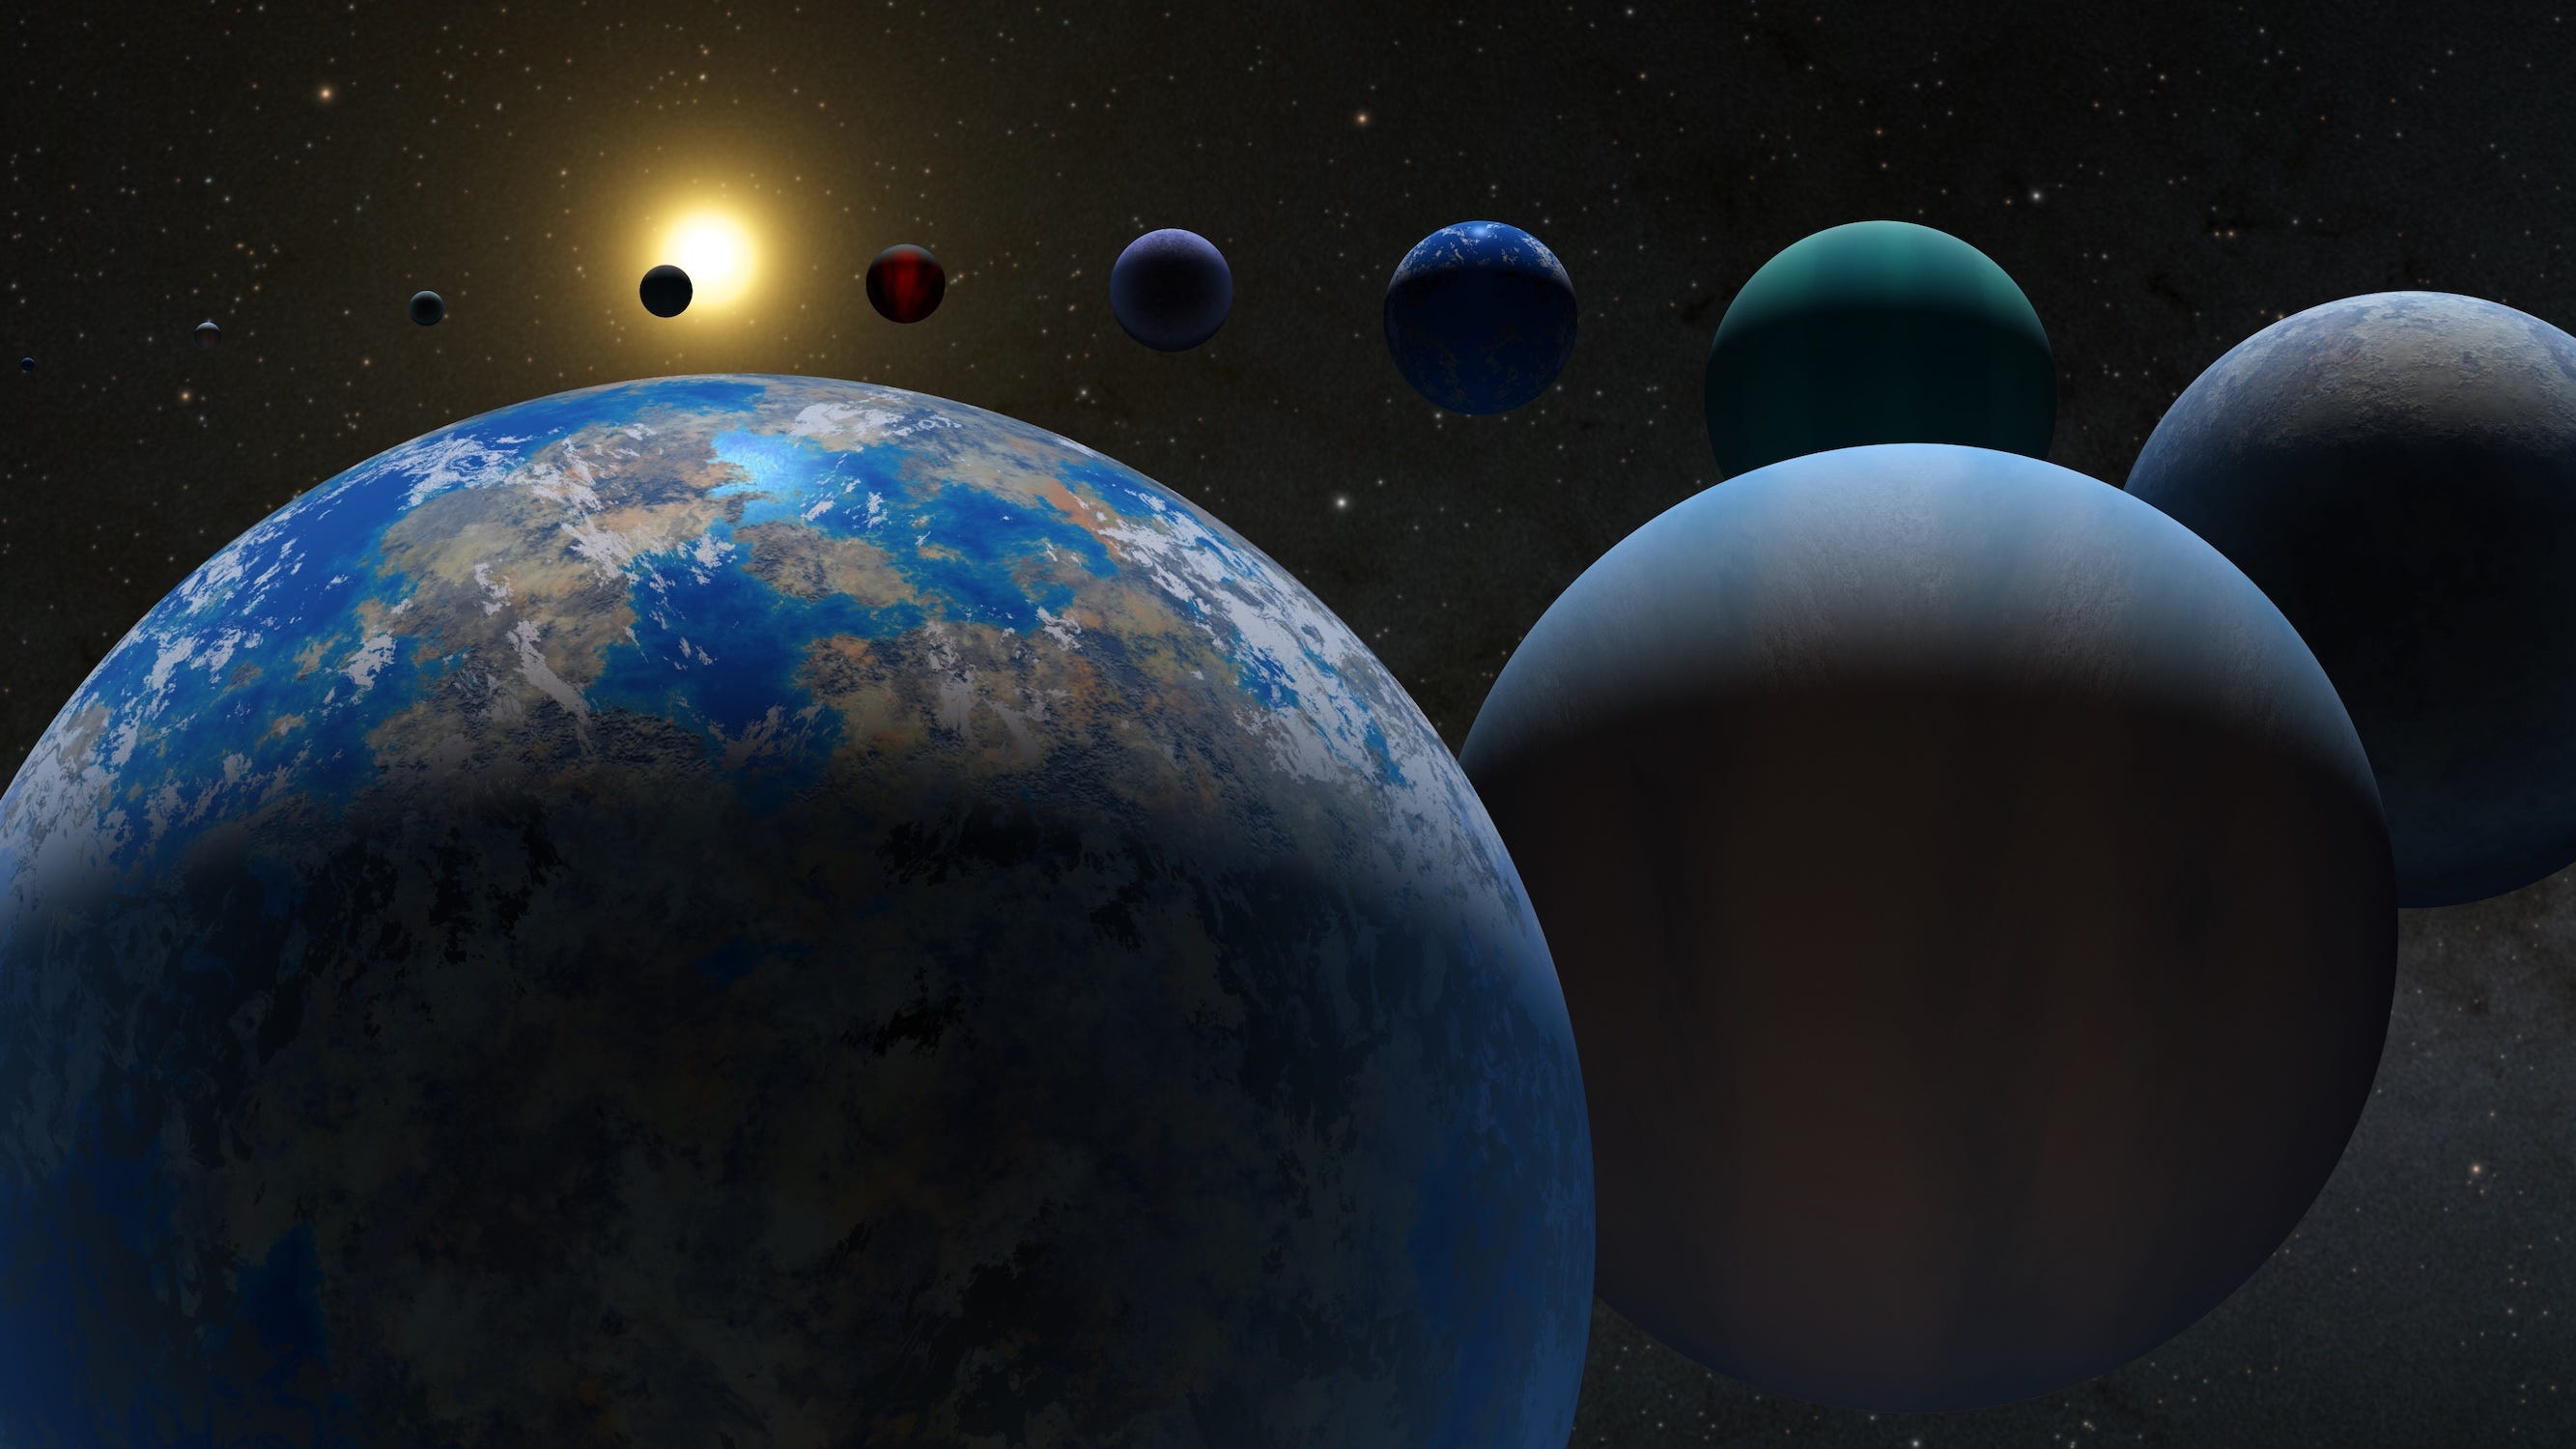 Abbildung: Planeten blau, grün, braun, rot, in einem Kreis im Weltraum aufgereiht